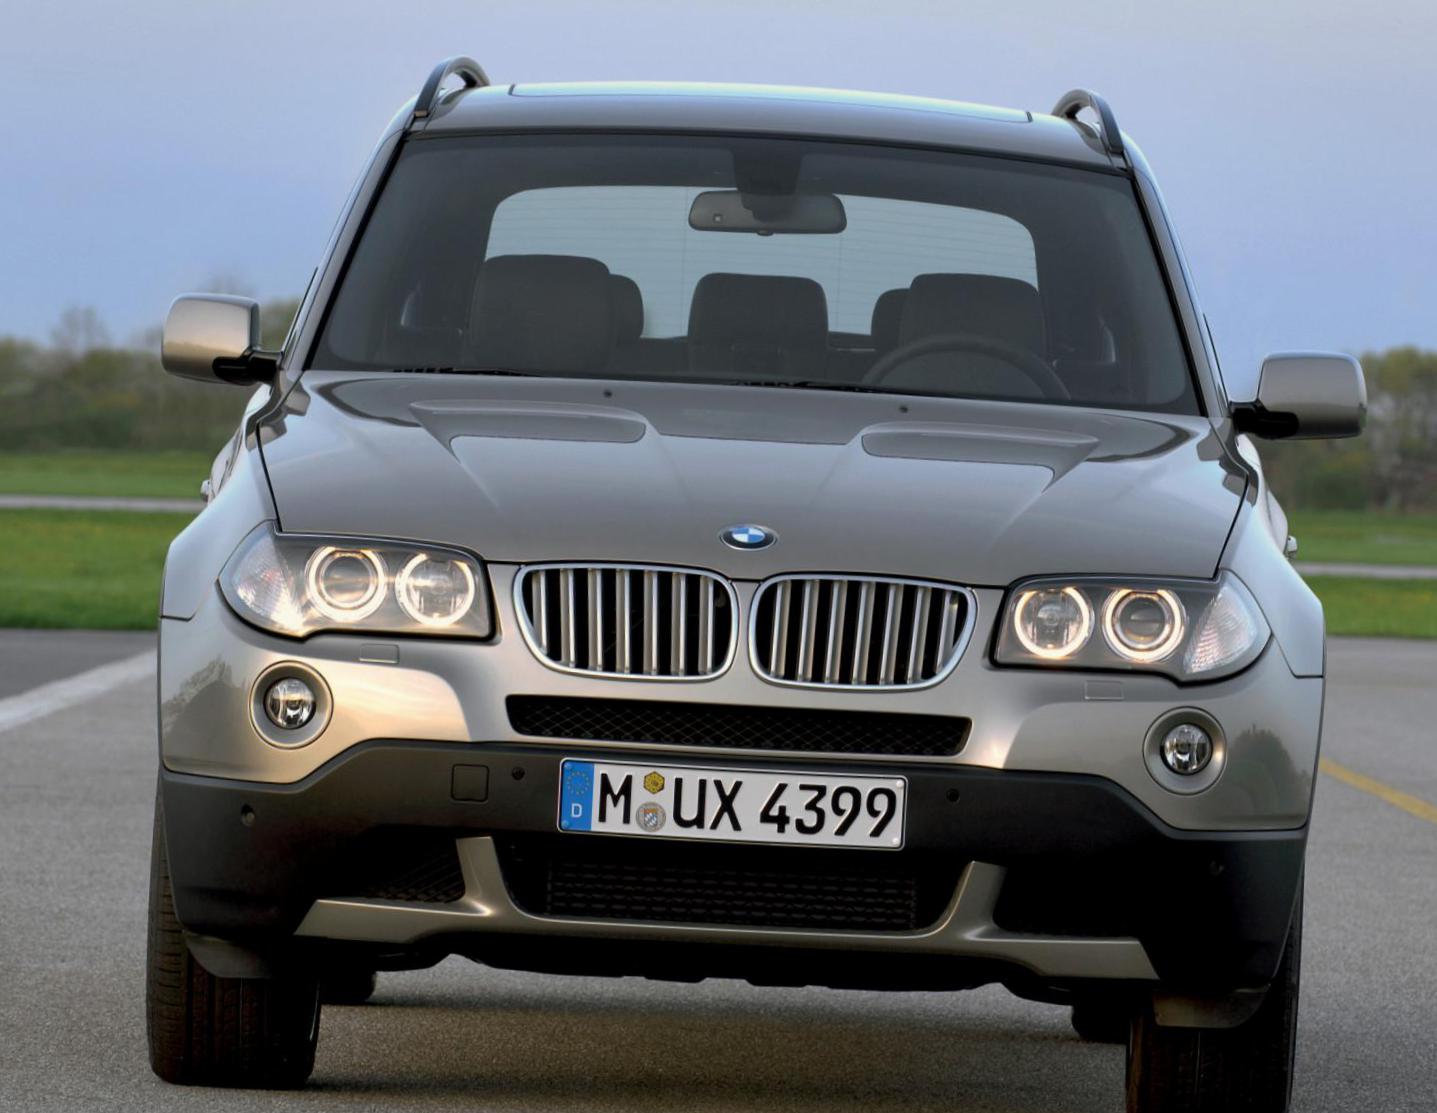 BMW X3 (E83) review 2013